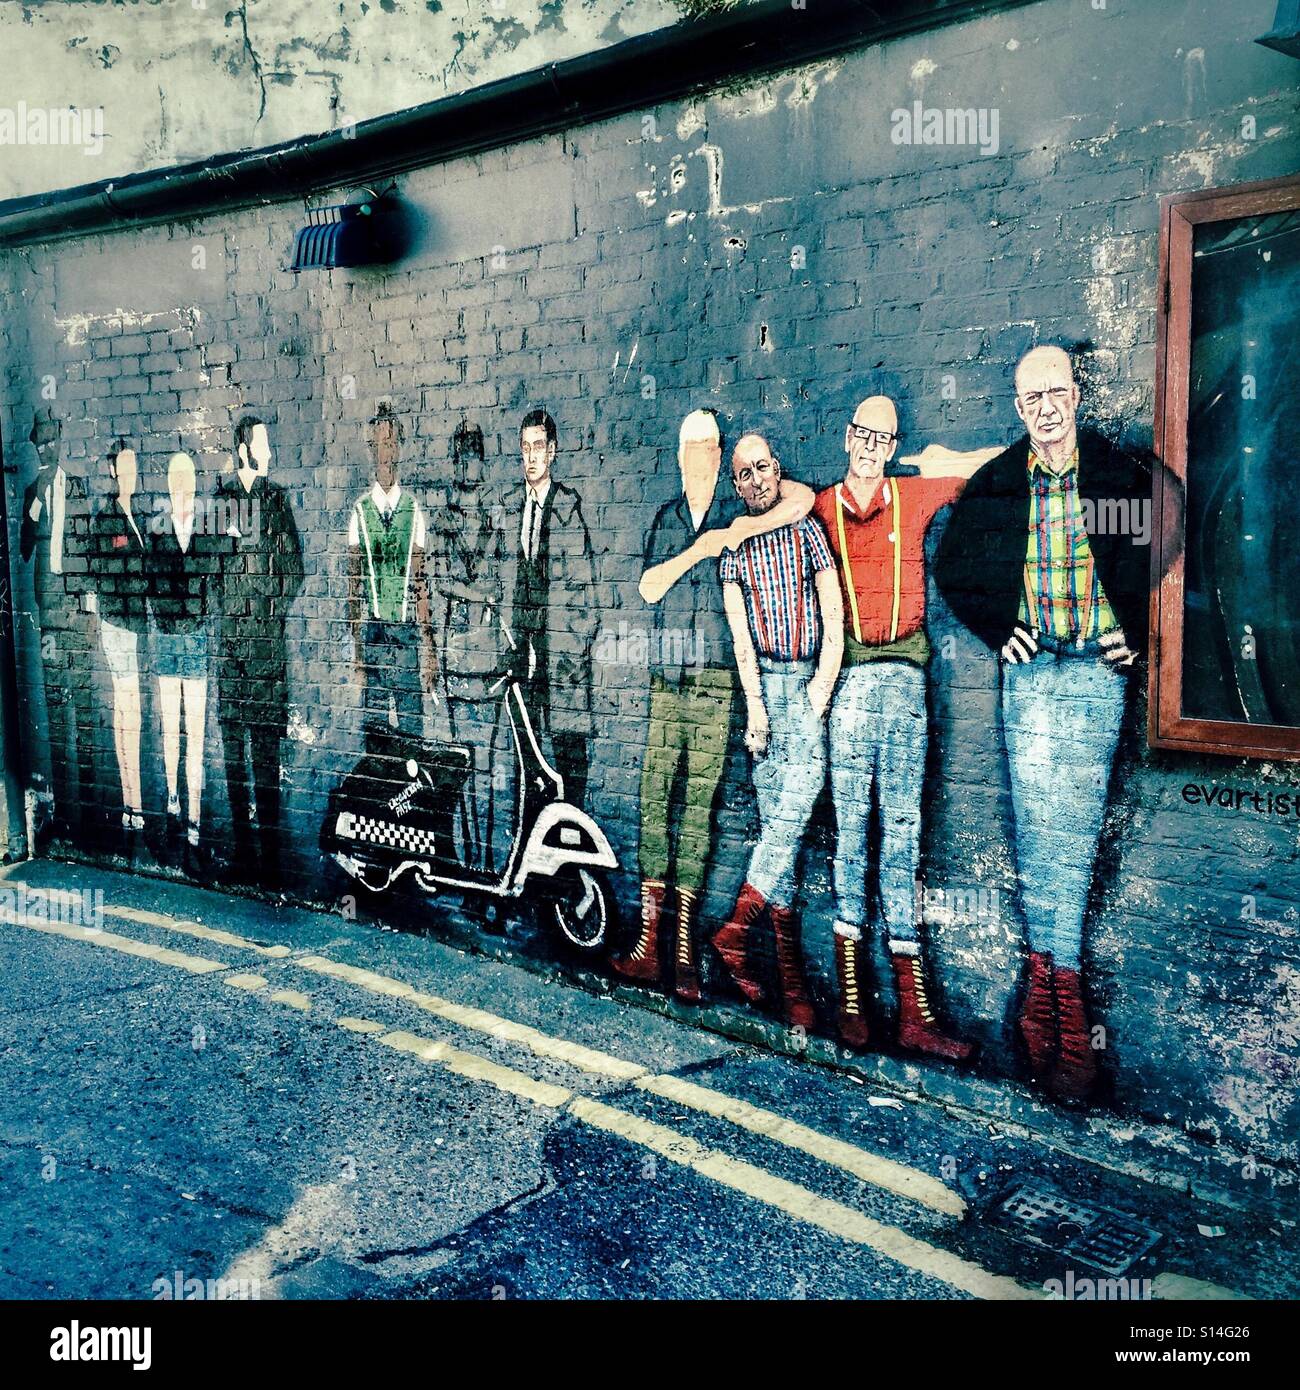 Gang de skinheads peint sur un mur de la rue en Angleterre Margate Banque D'Images